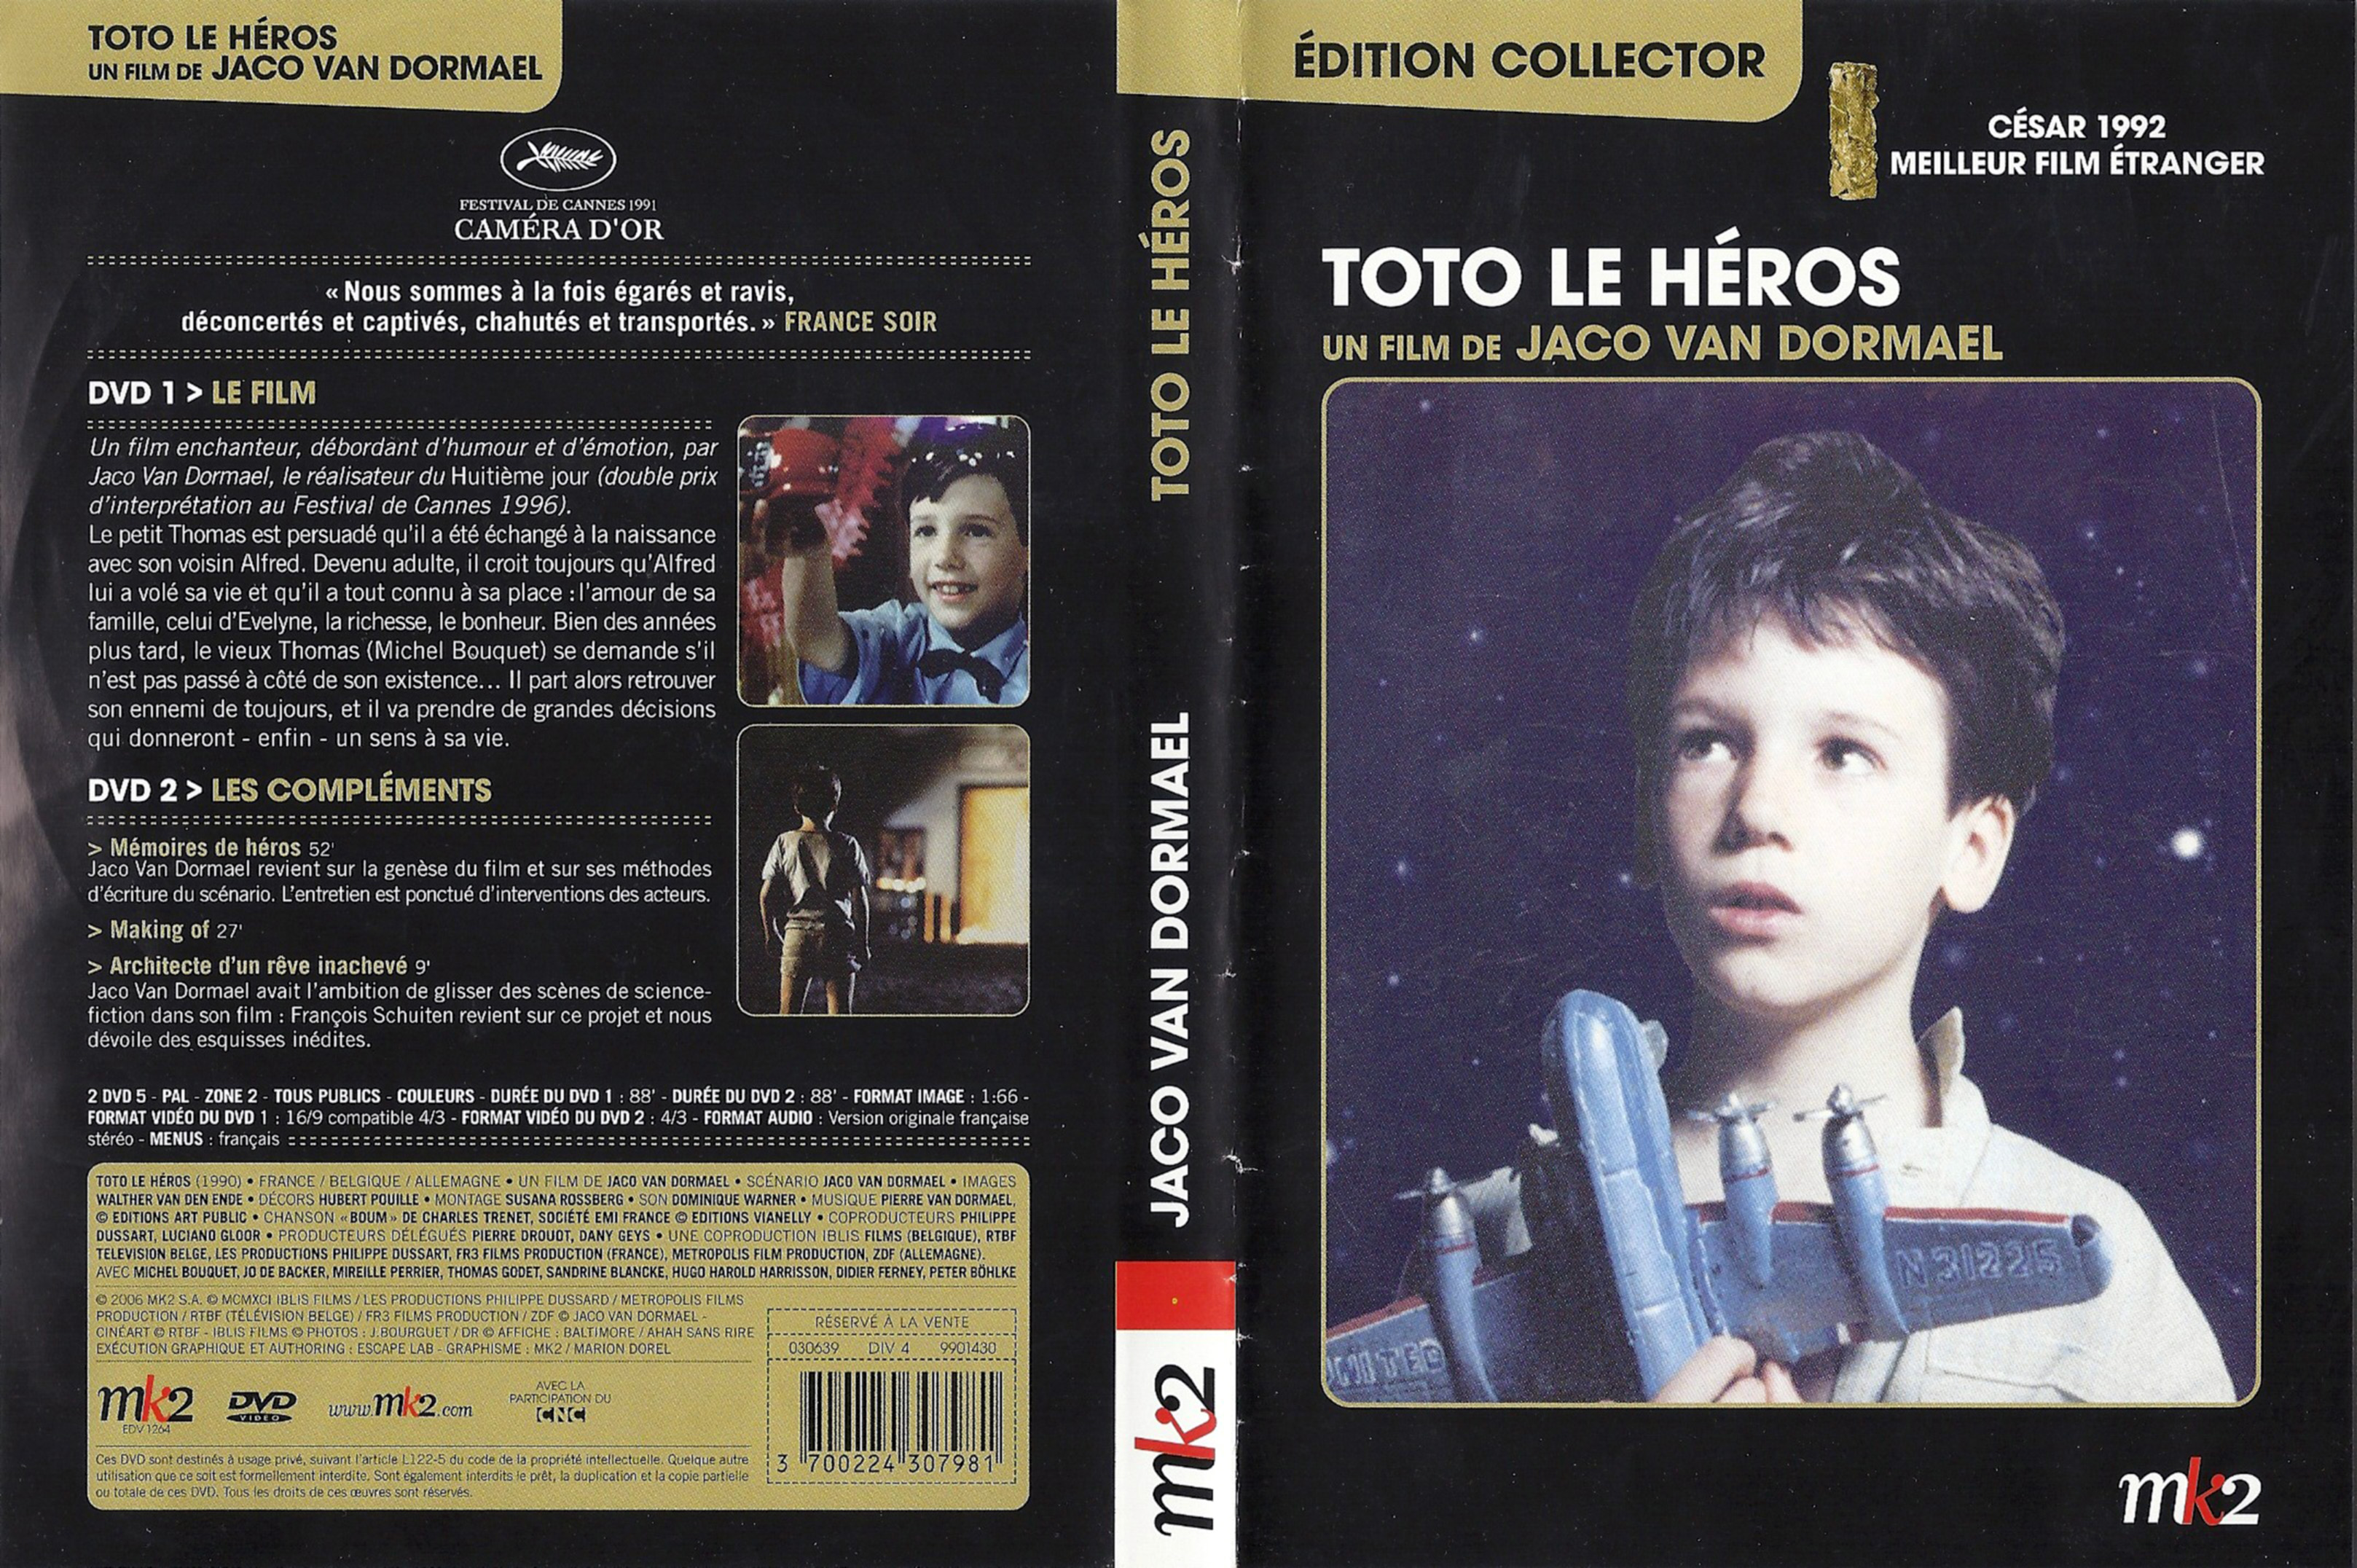 Jaquette DVD Toto le hros